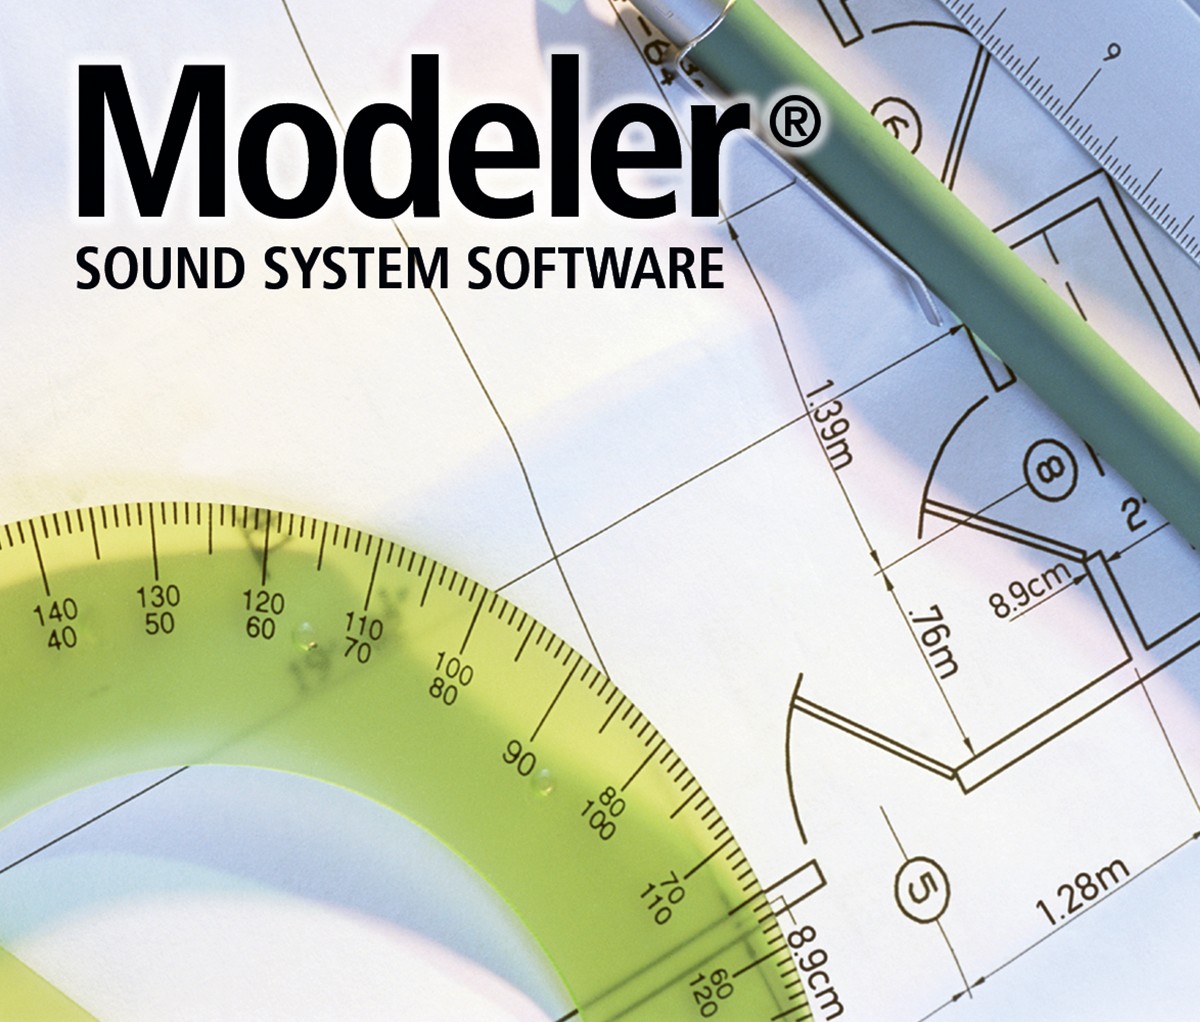 Modeler sound system software